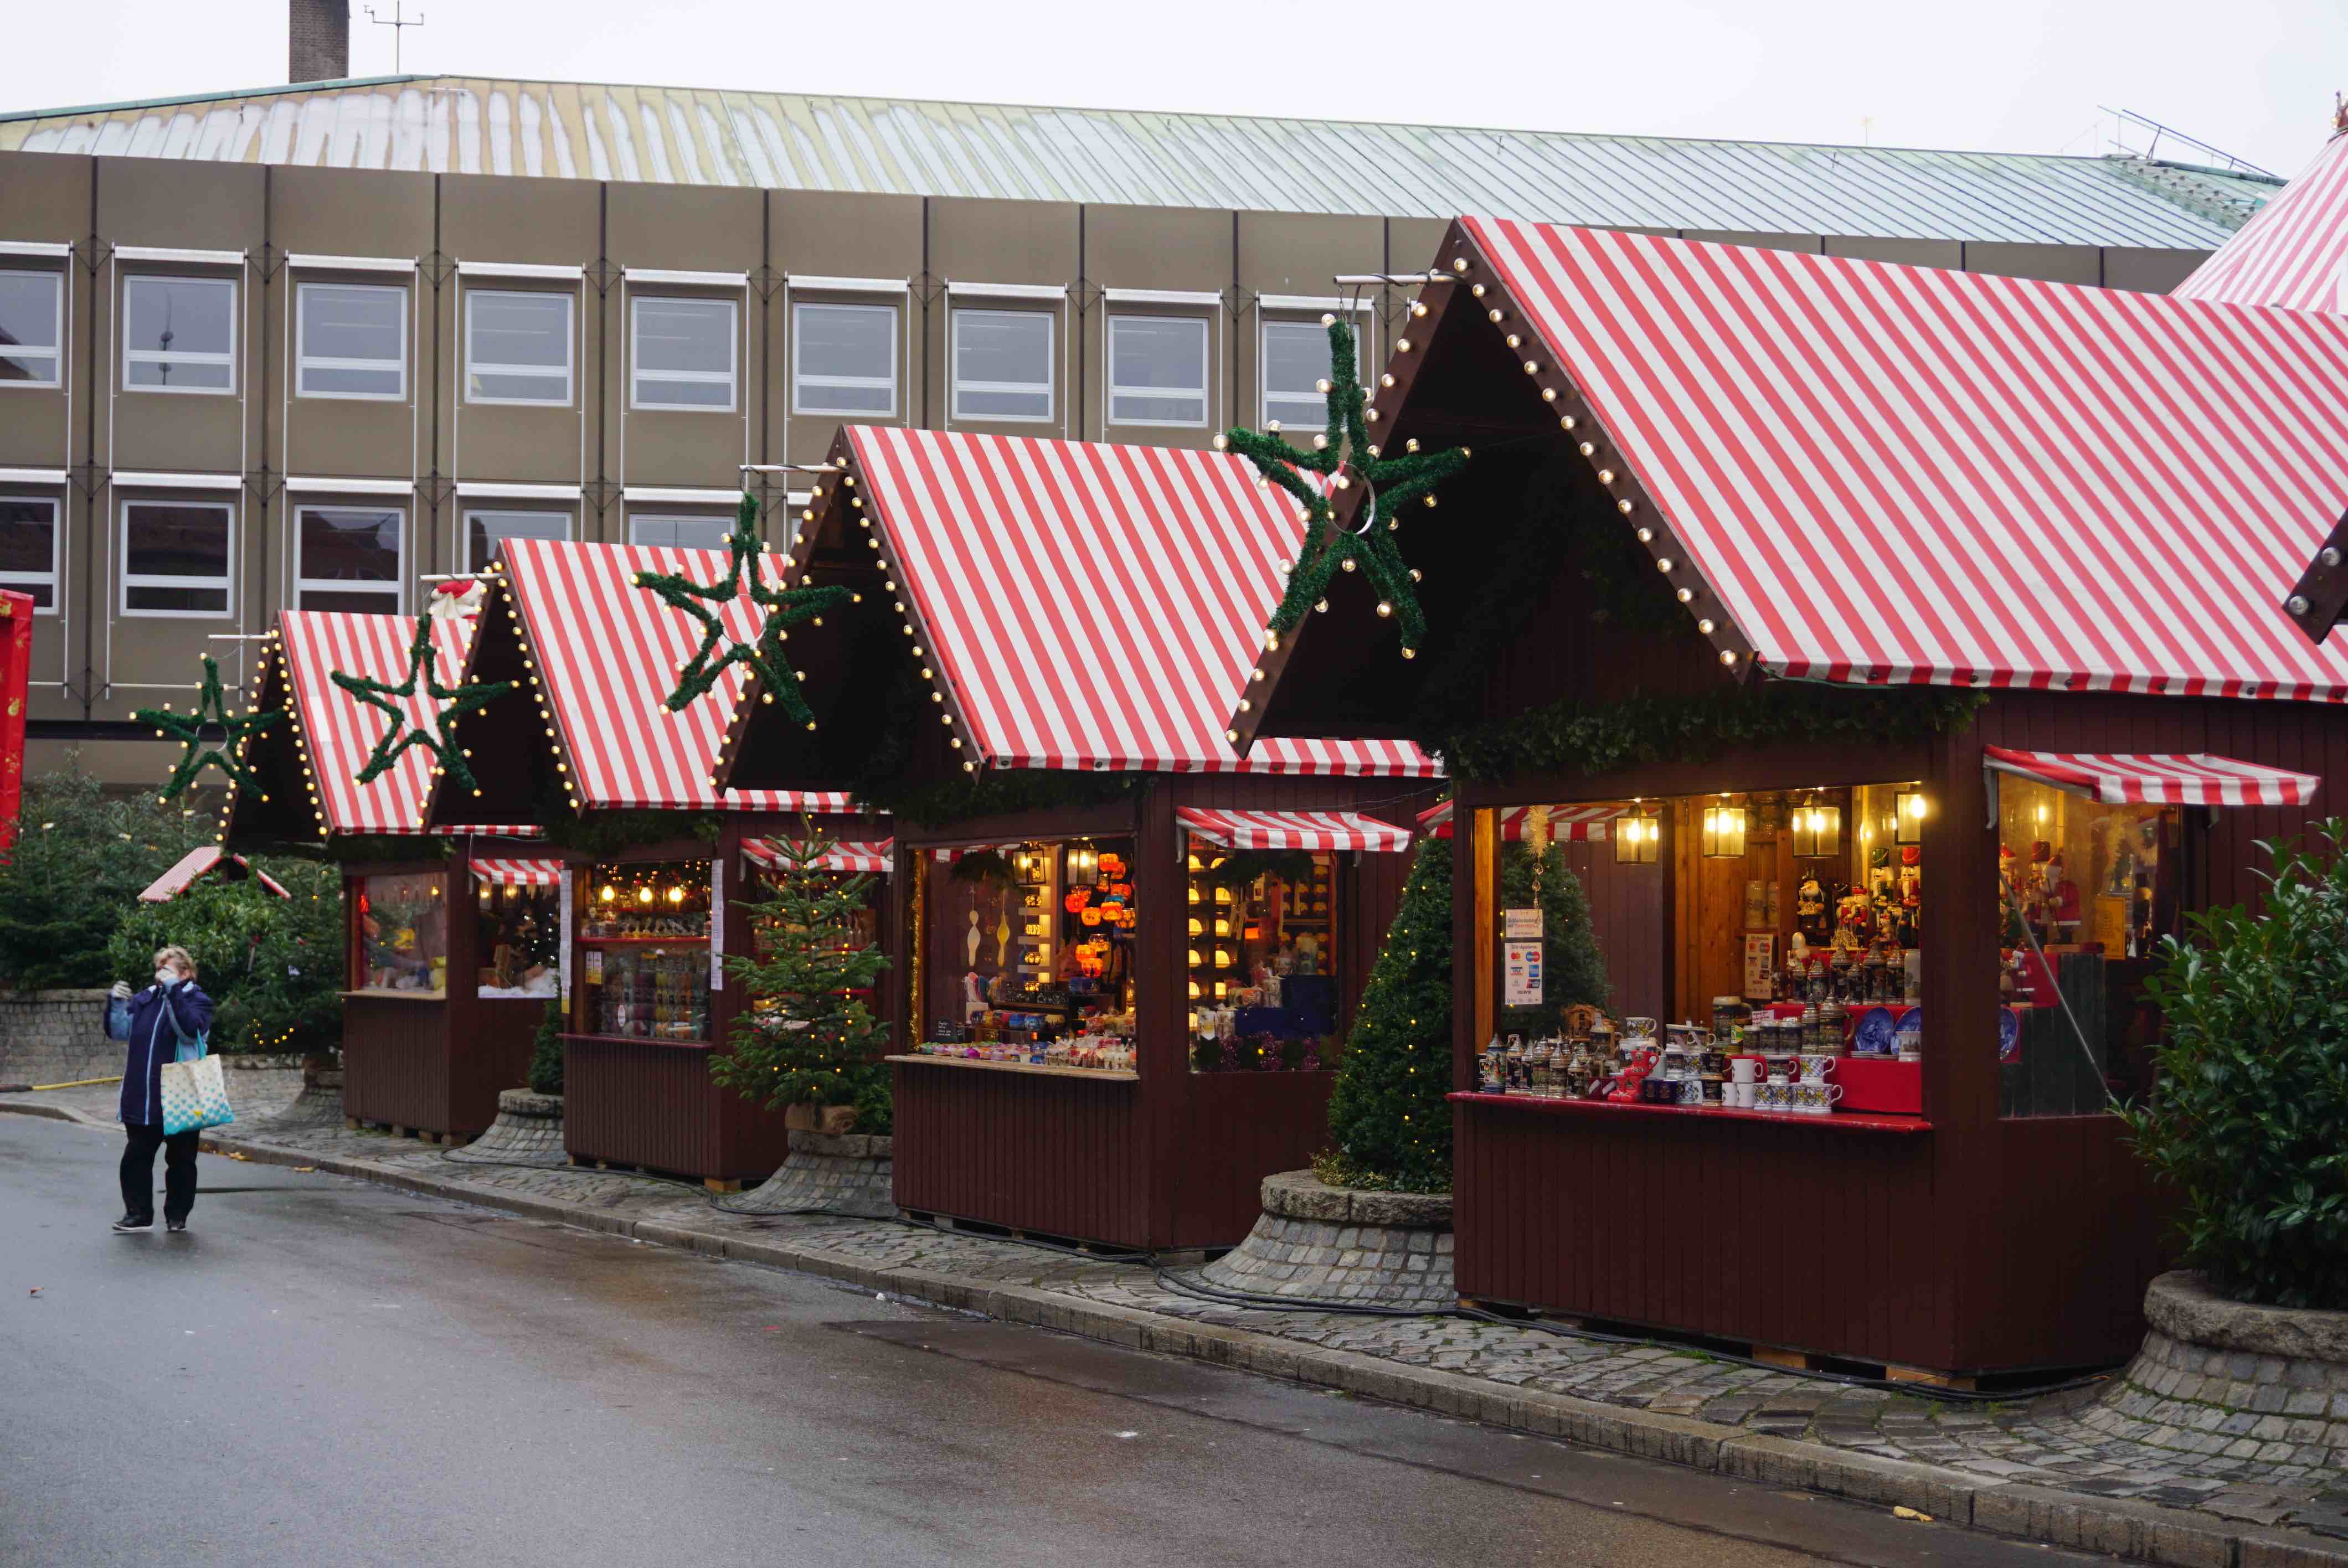 Nürnberg Kinderweihnachtsmarkt